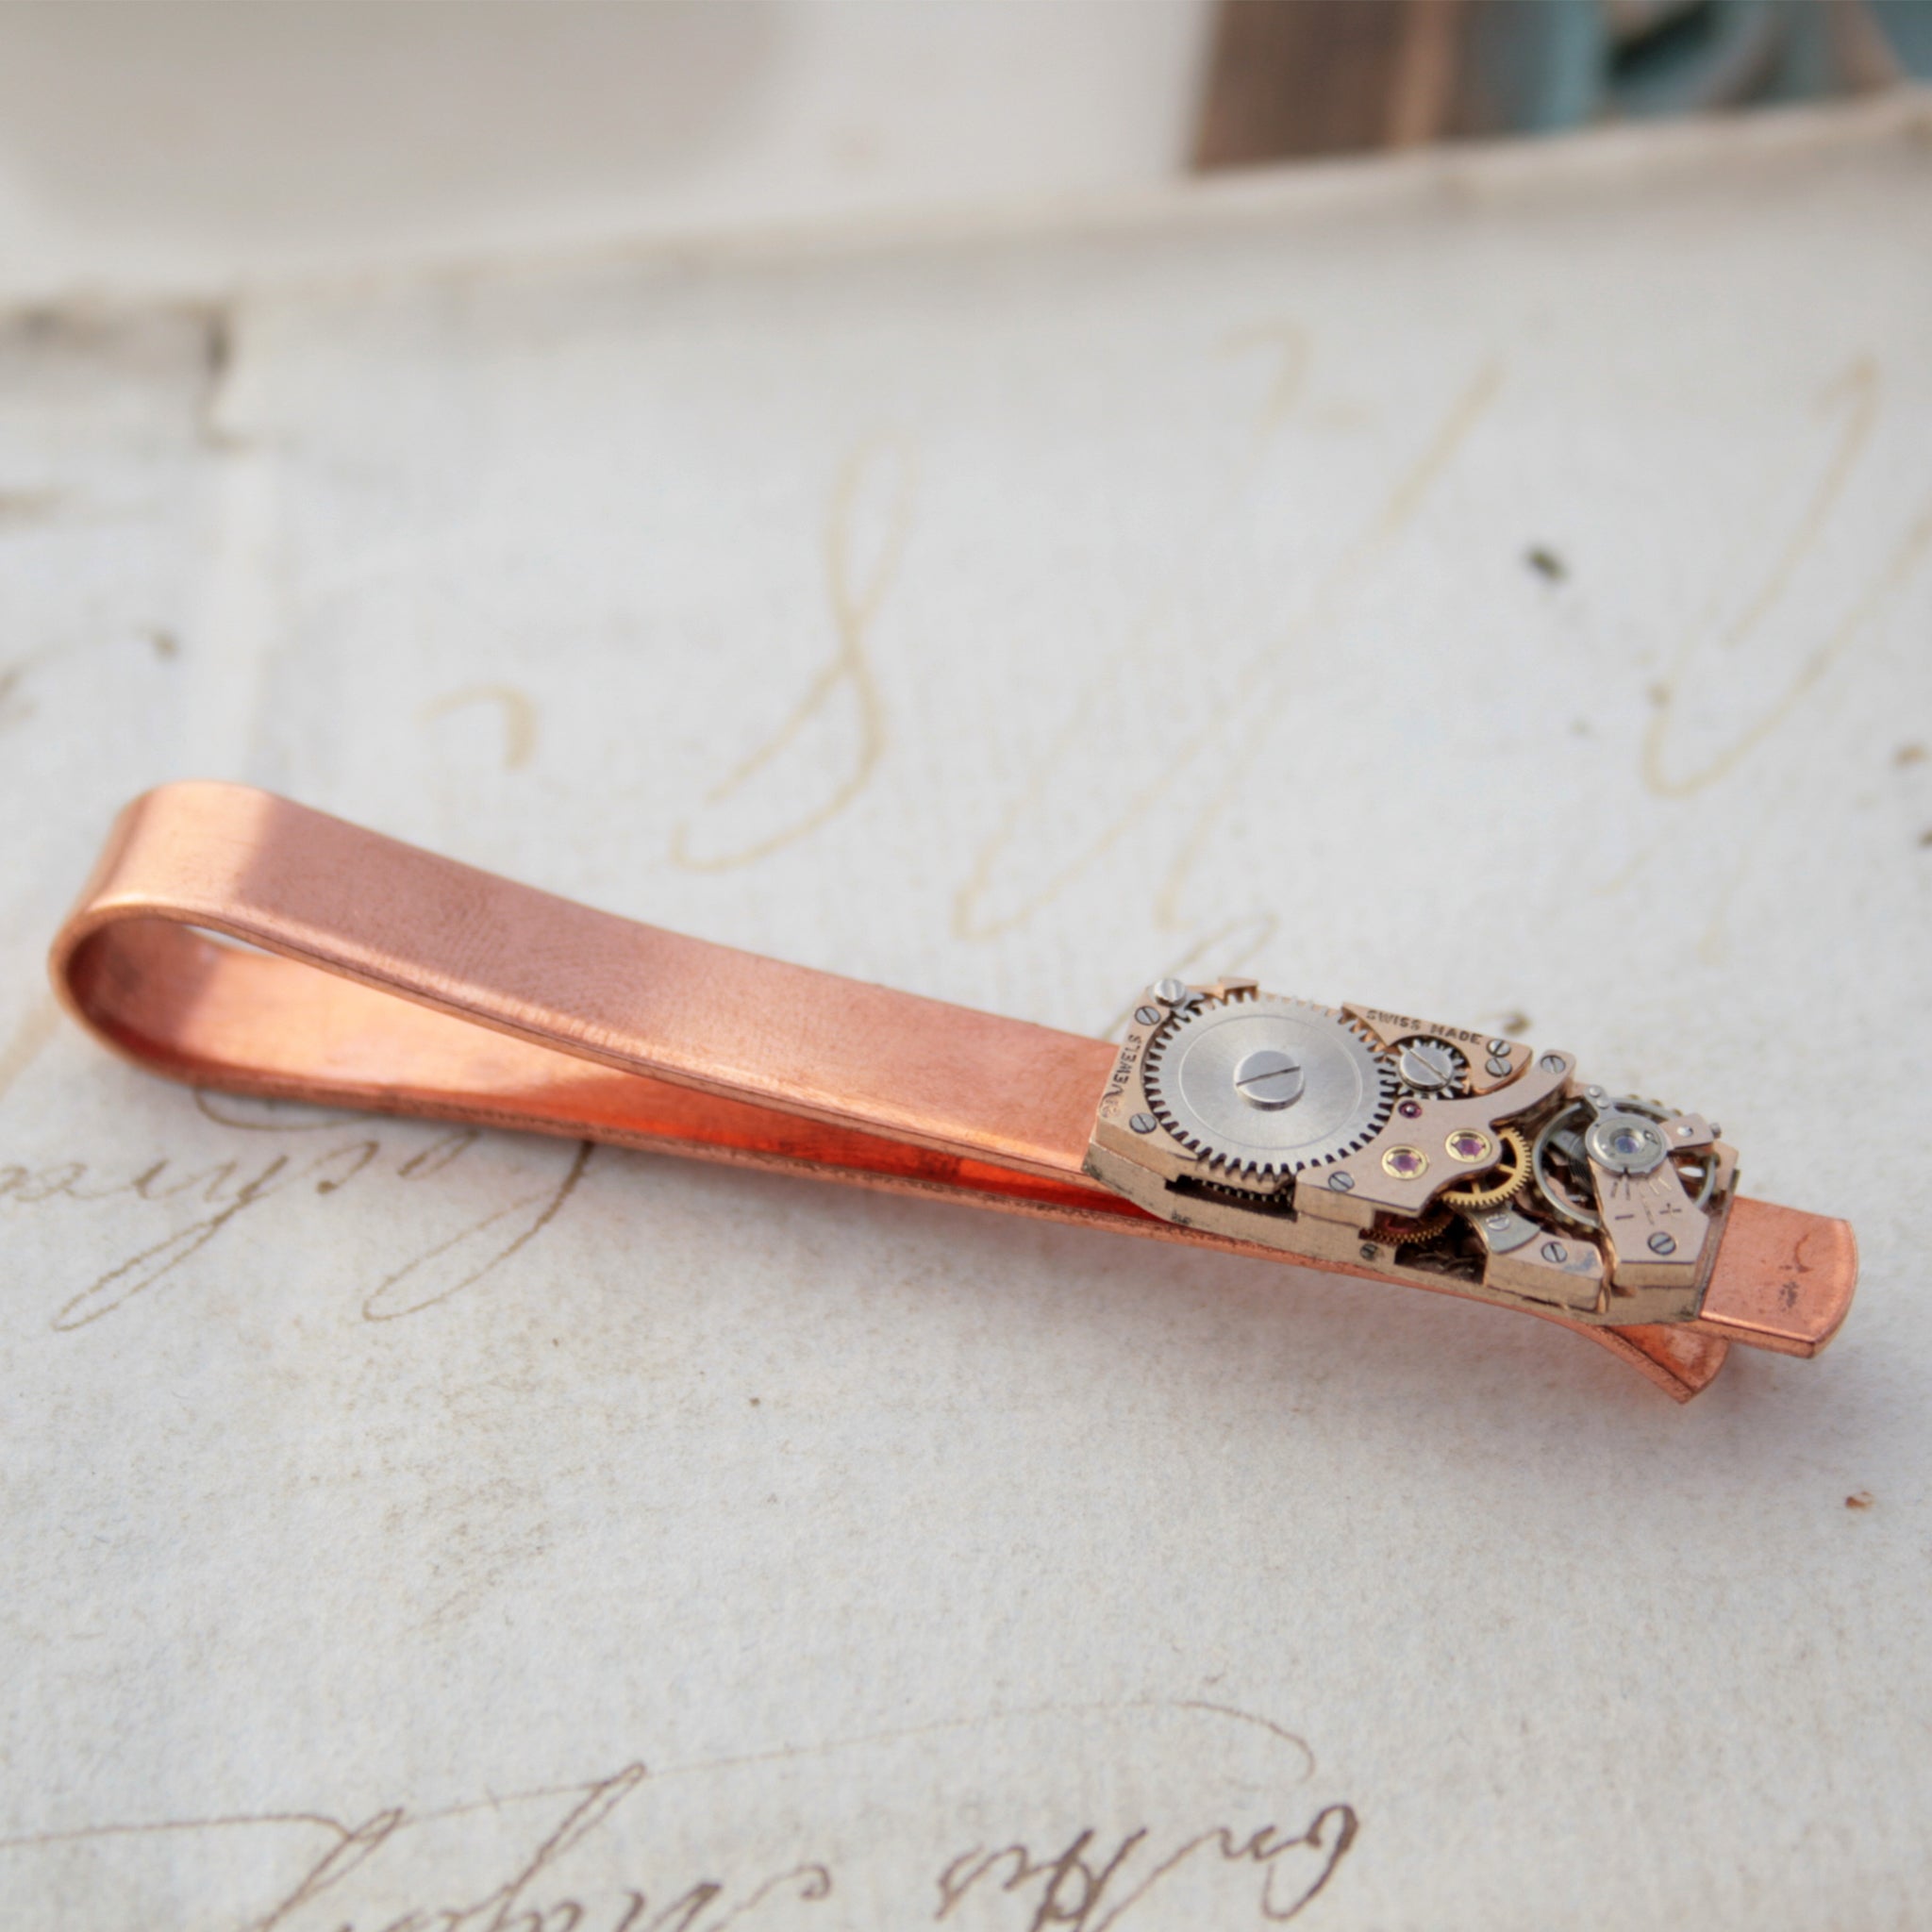 Copper Tie Clip with Steampunk Watch Work